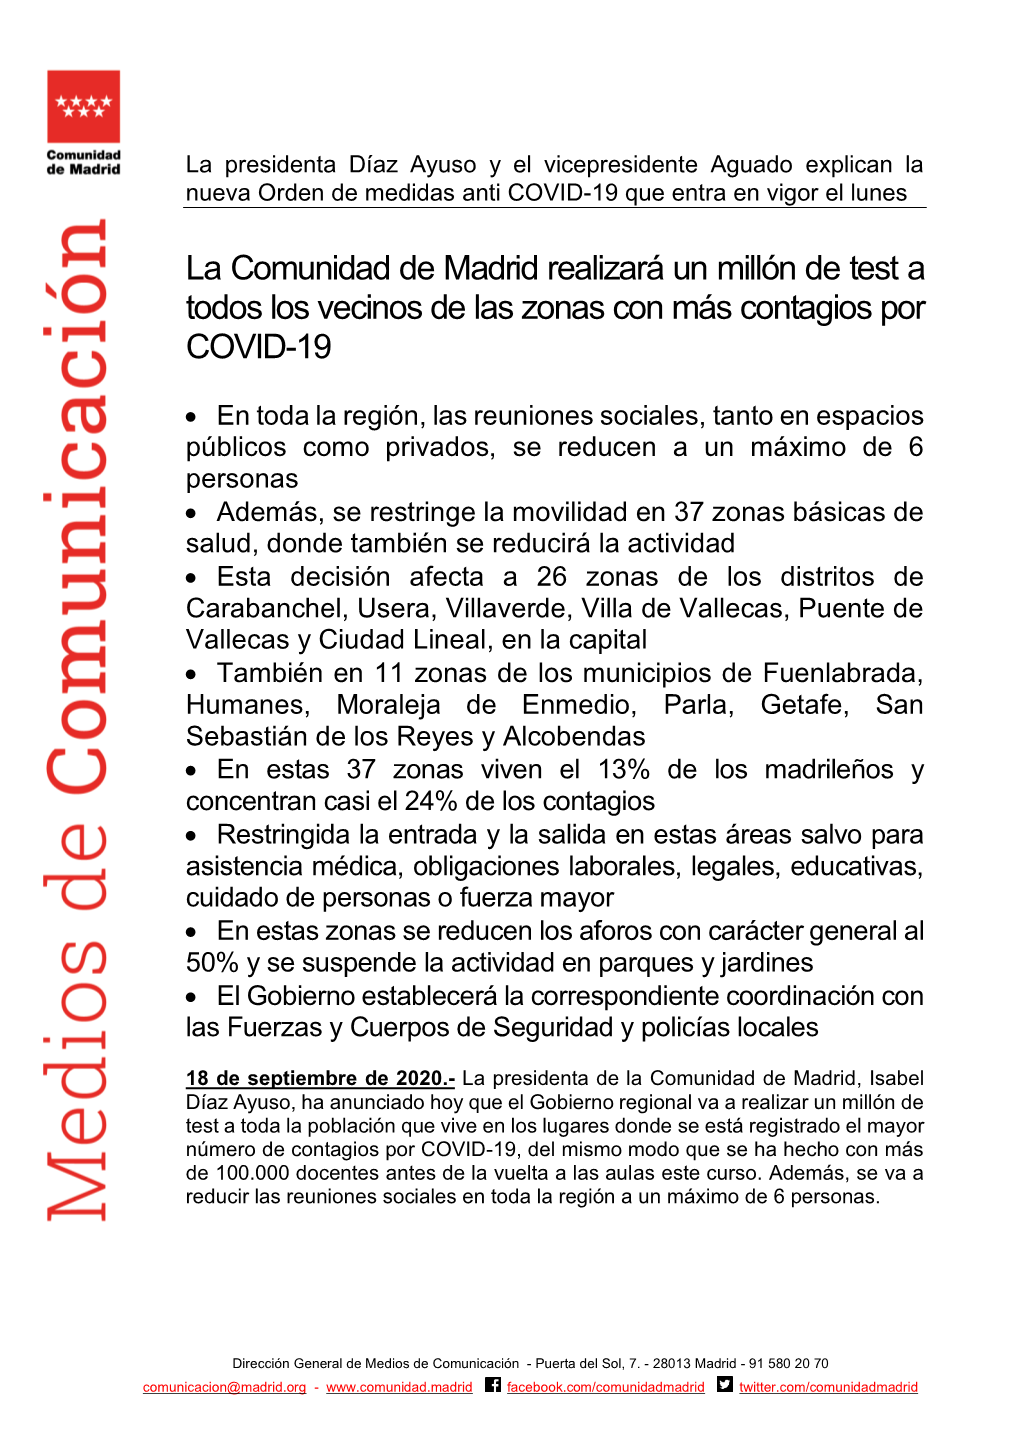 La Comunidad De Madrid Realizará Un Millón De Test a Todos Los Vecinos De Las Zonas Con Más Contagios Por COVID-19